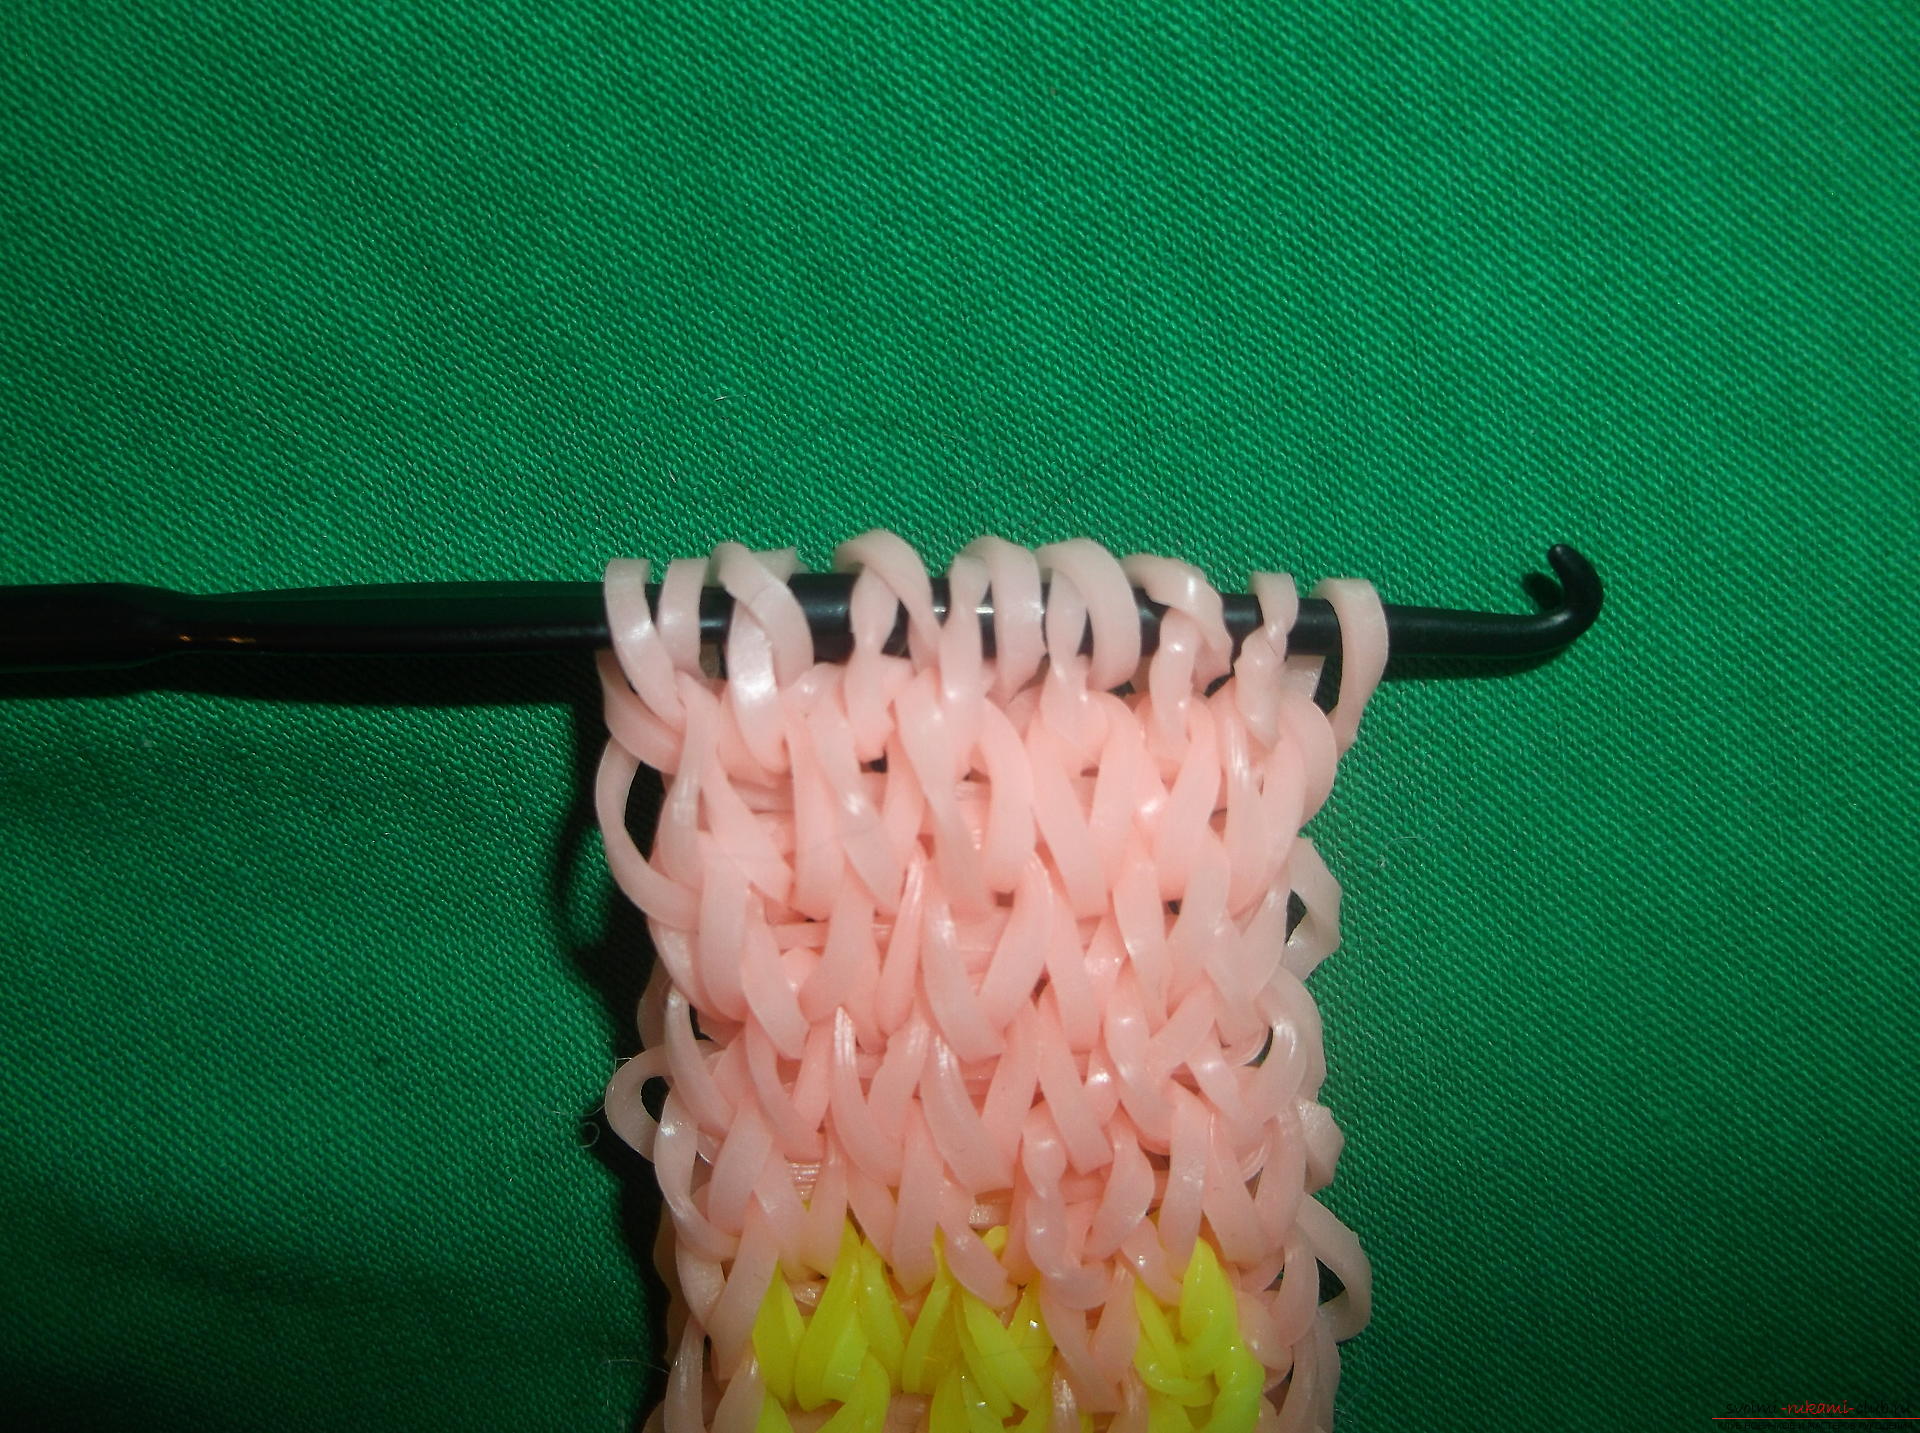 Фото к уроку по плетению браслета с надписью 